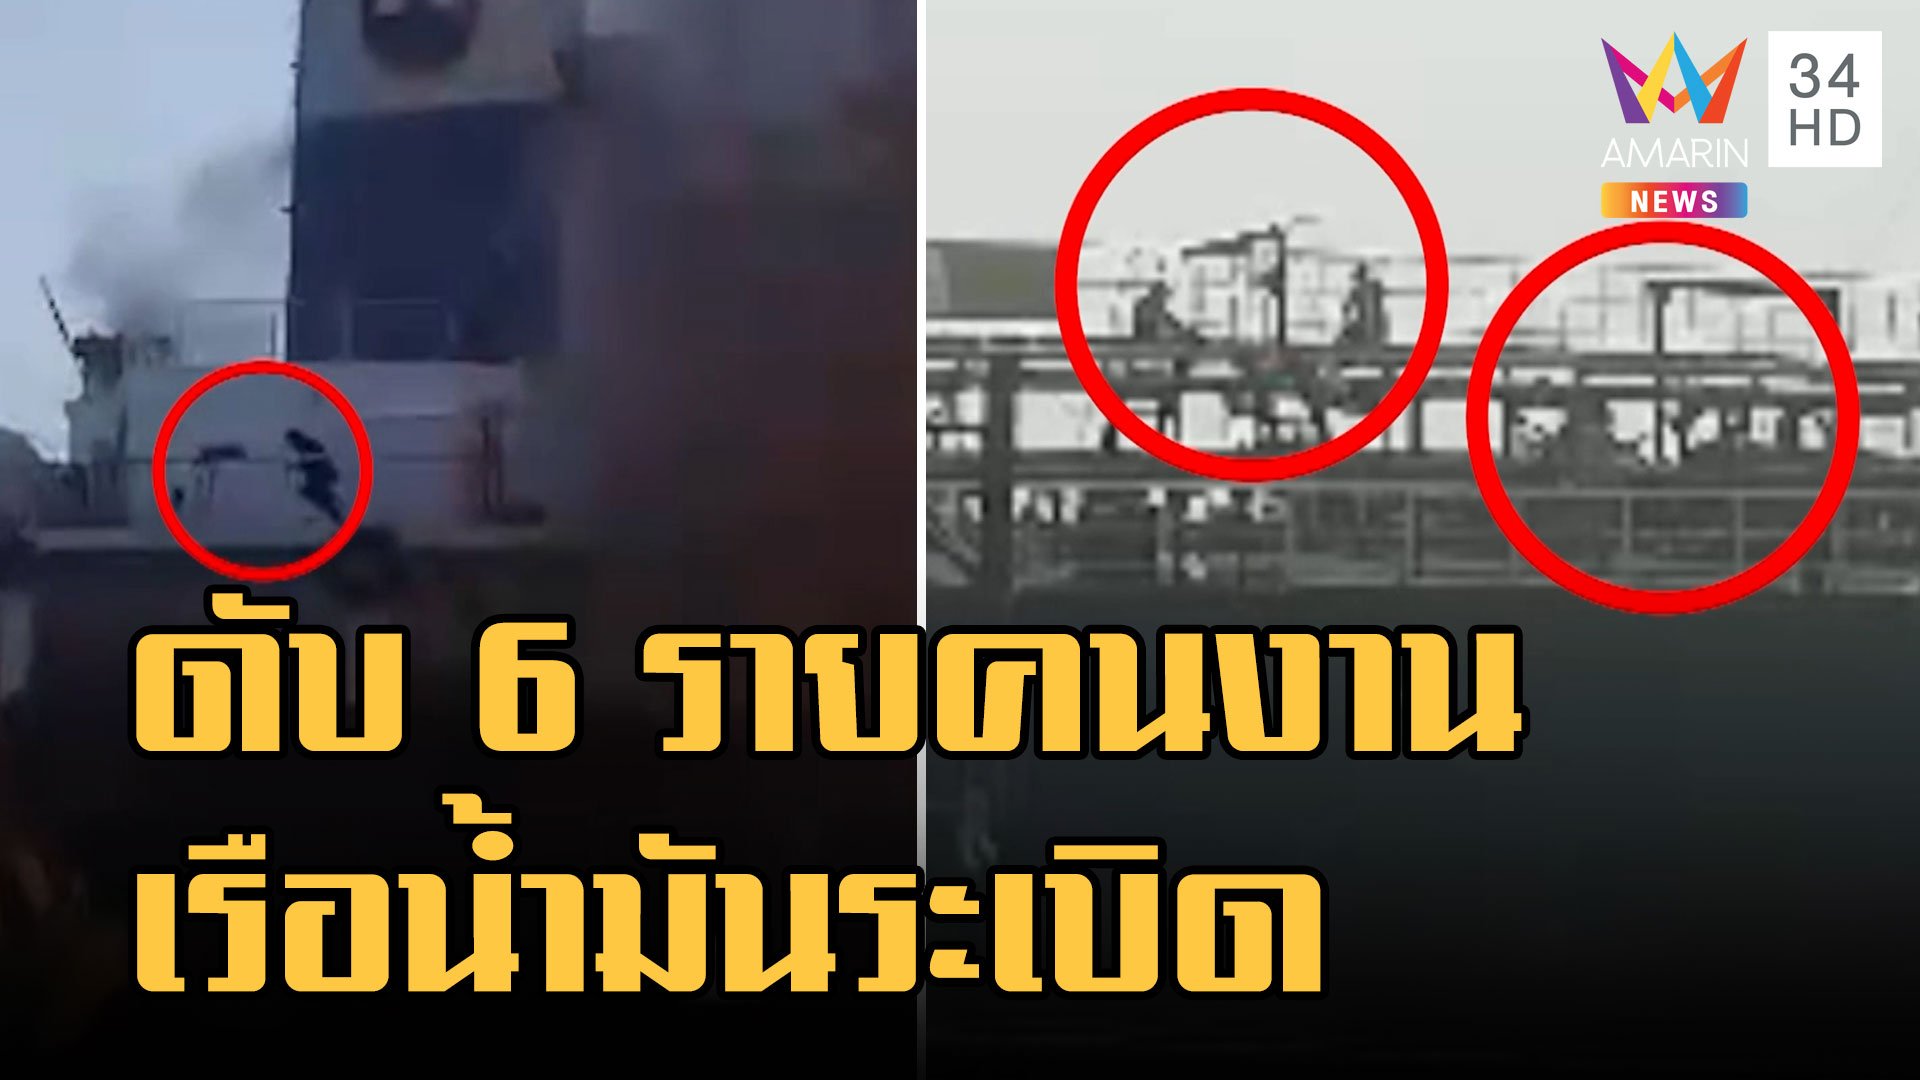 พบศพแล้วลูกเรือบรรทุกน้ำมันระเบิด ดับ 6 ราย | ข่าวเที่ยงอมรินทร์ | 18 ม.ค. 66 | AMARIN TVHD34